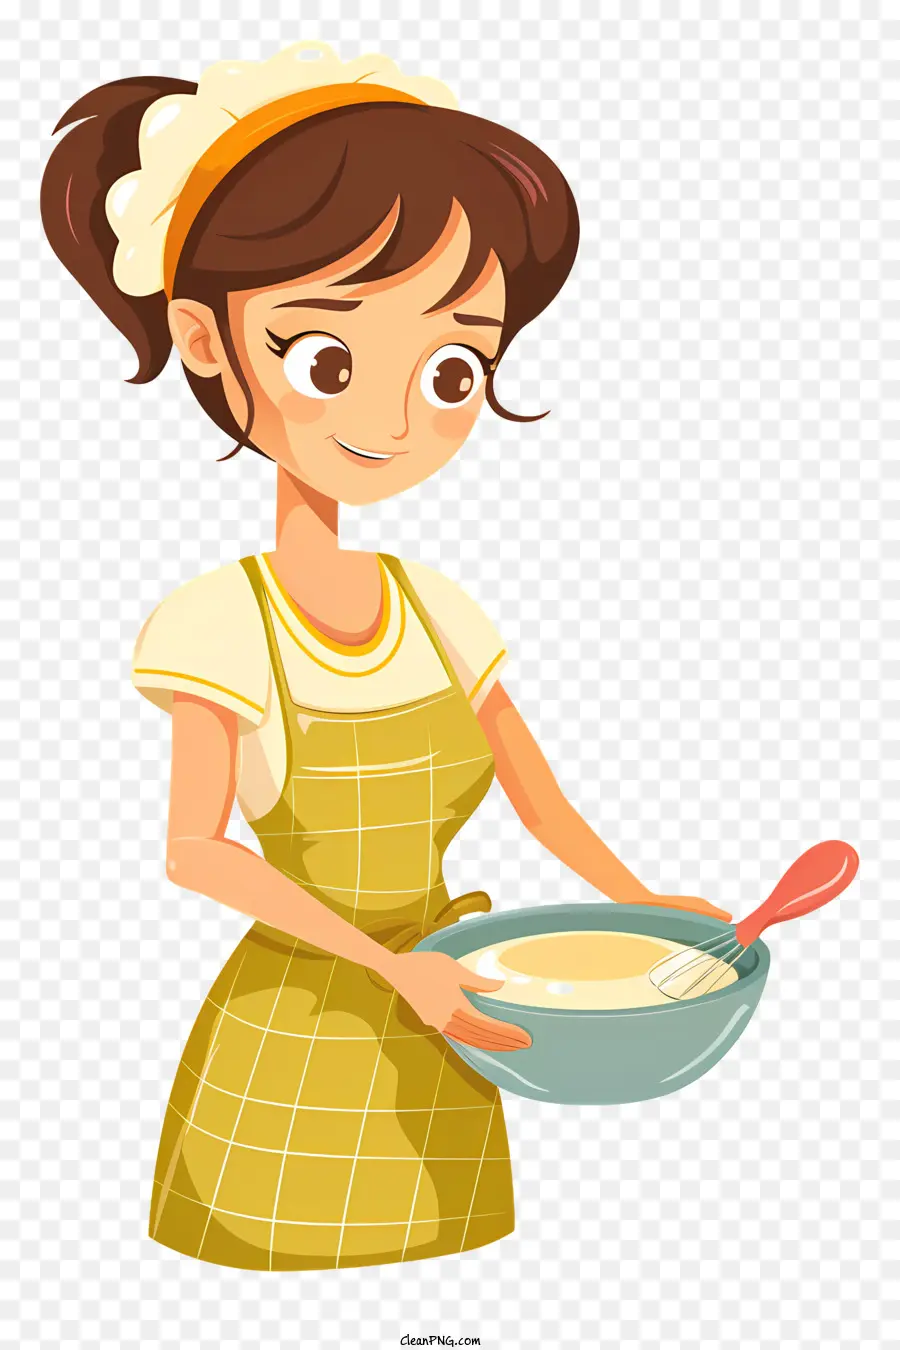 Cucinare Cantone da cucina Ricetta cucina cucina stufa - Donna che cucina in cucina pulita e organizzata